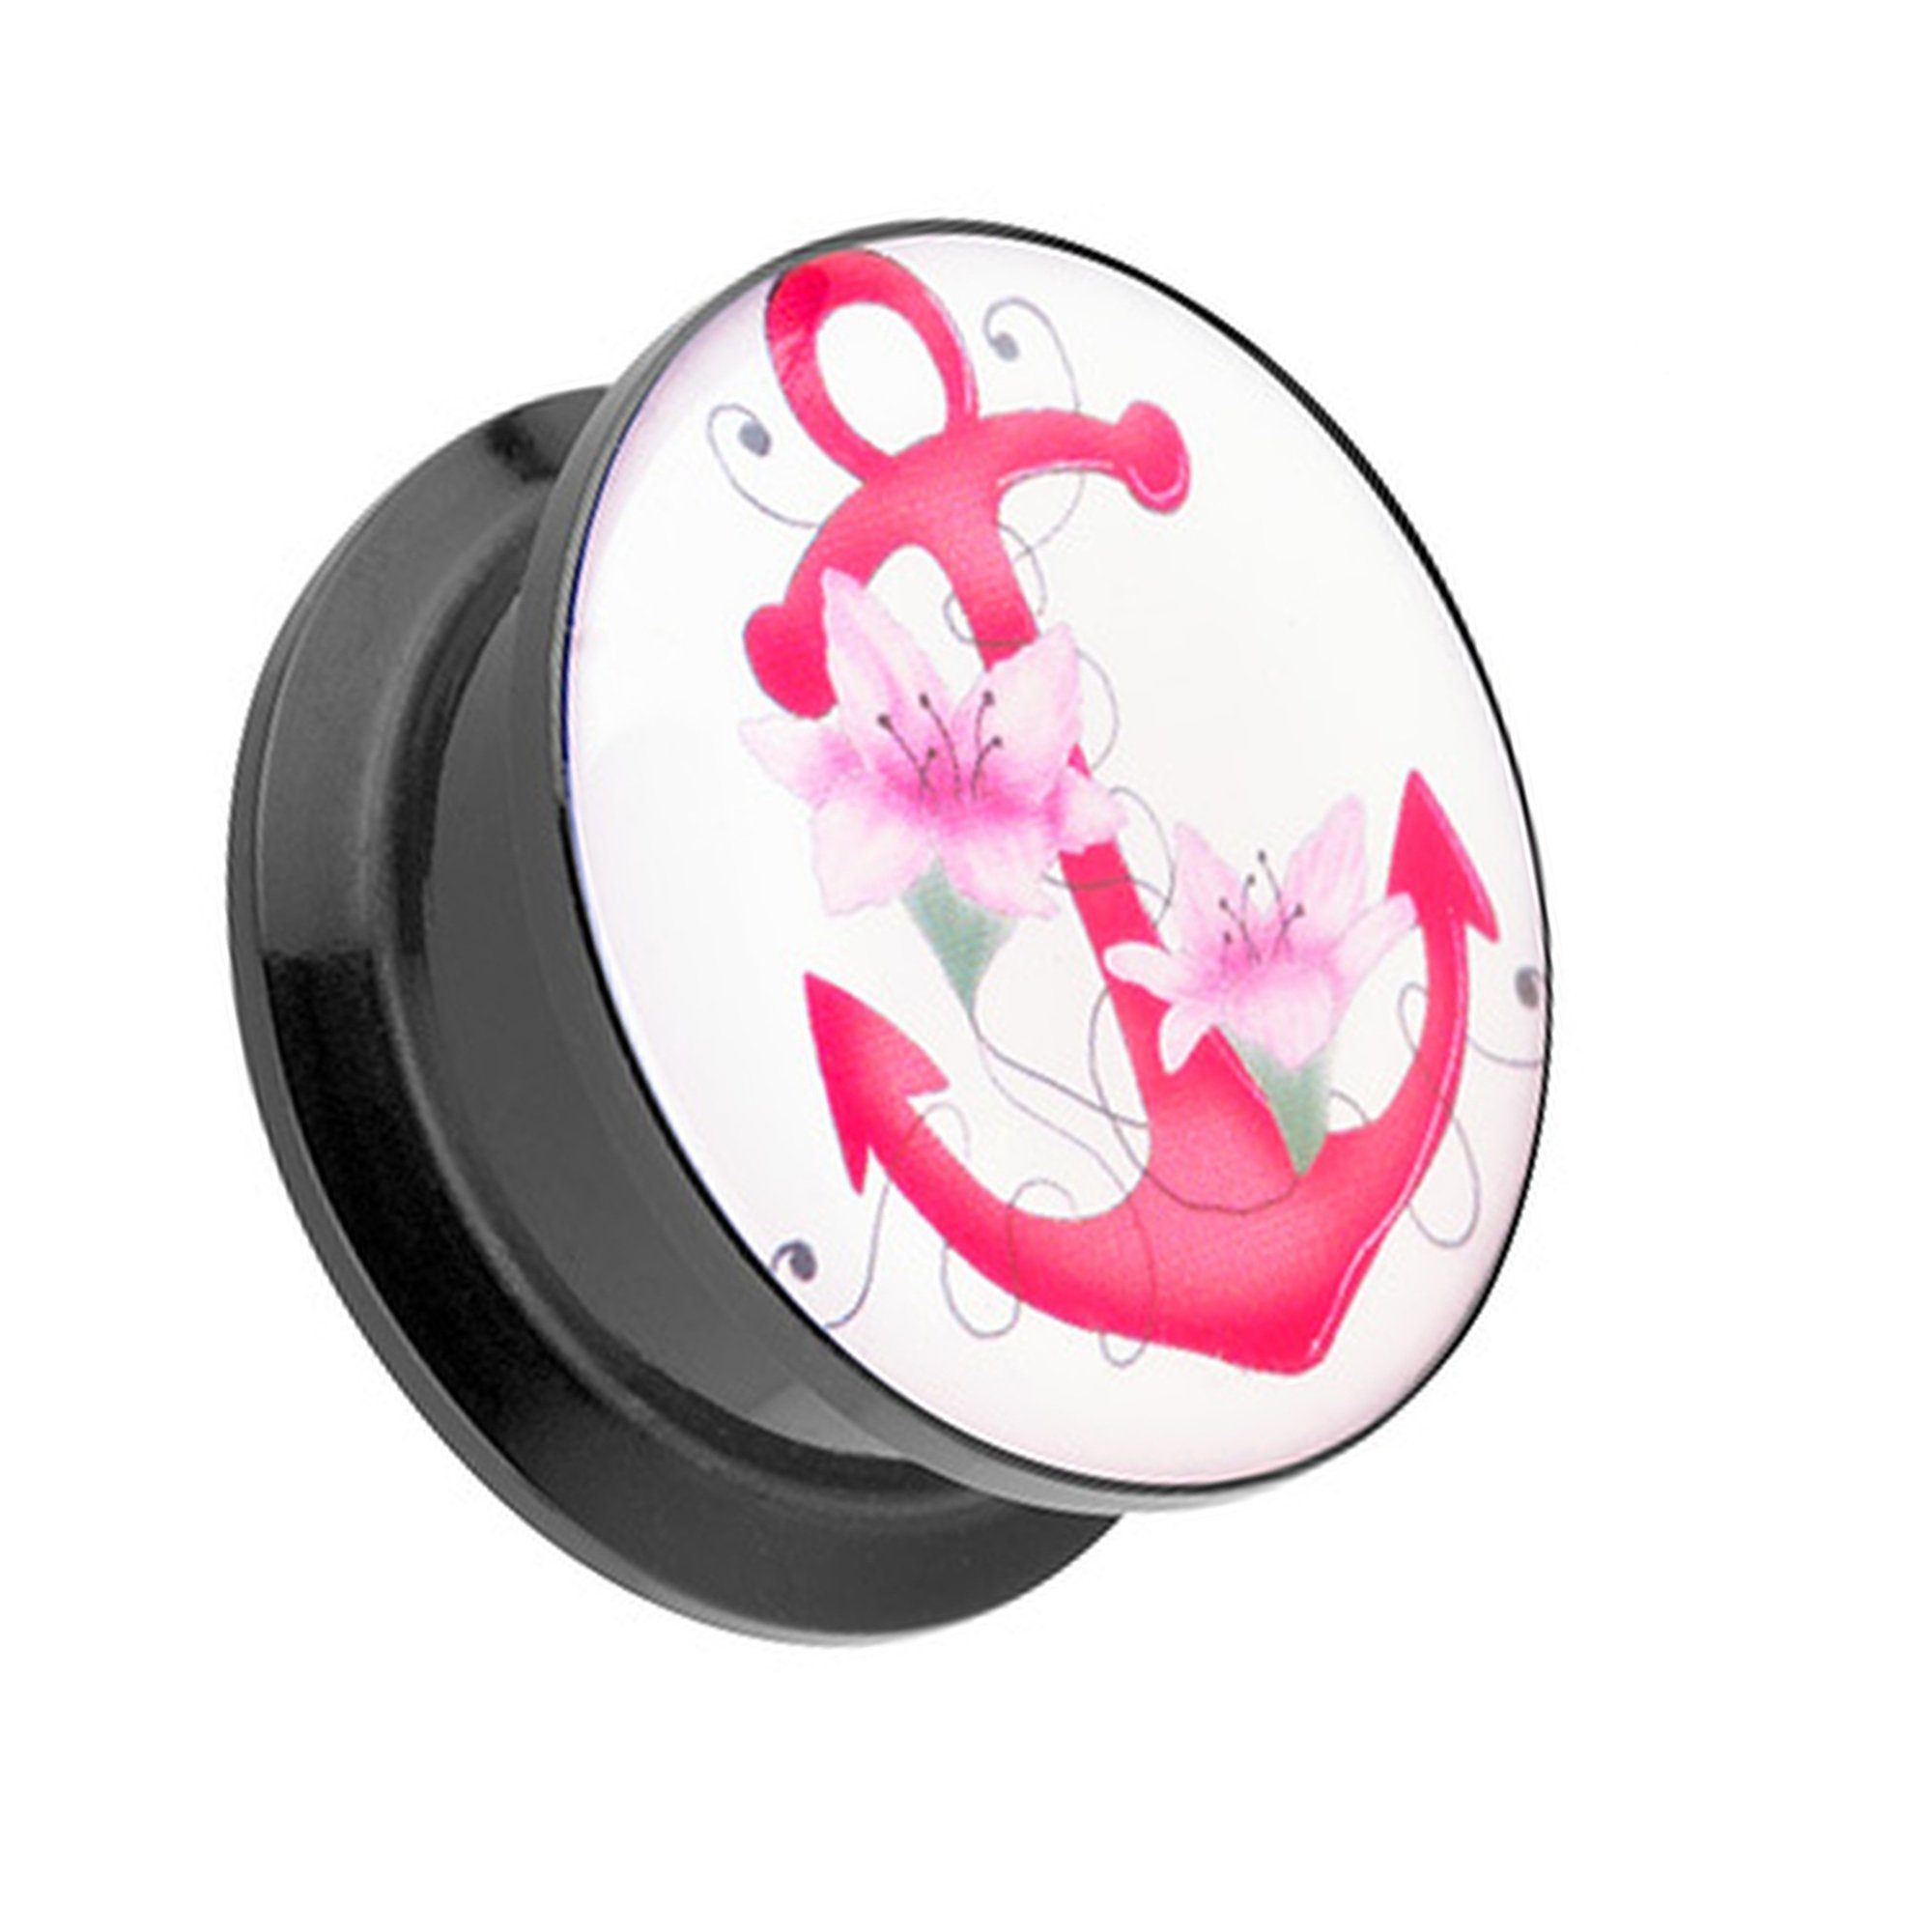 Taffstyle Plug Piercing Schraubverschluß Pink Anchor Anker Motiv, Ohr Plug Flesh Tunnel Ohrpiercing Kunststoff Schraub Pink Blumen Motiv | Plugs